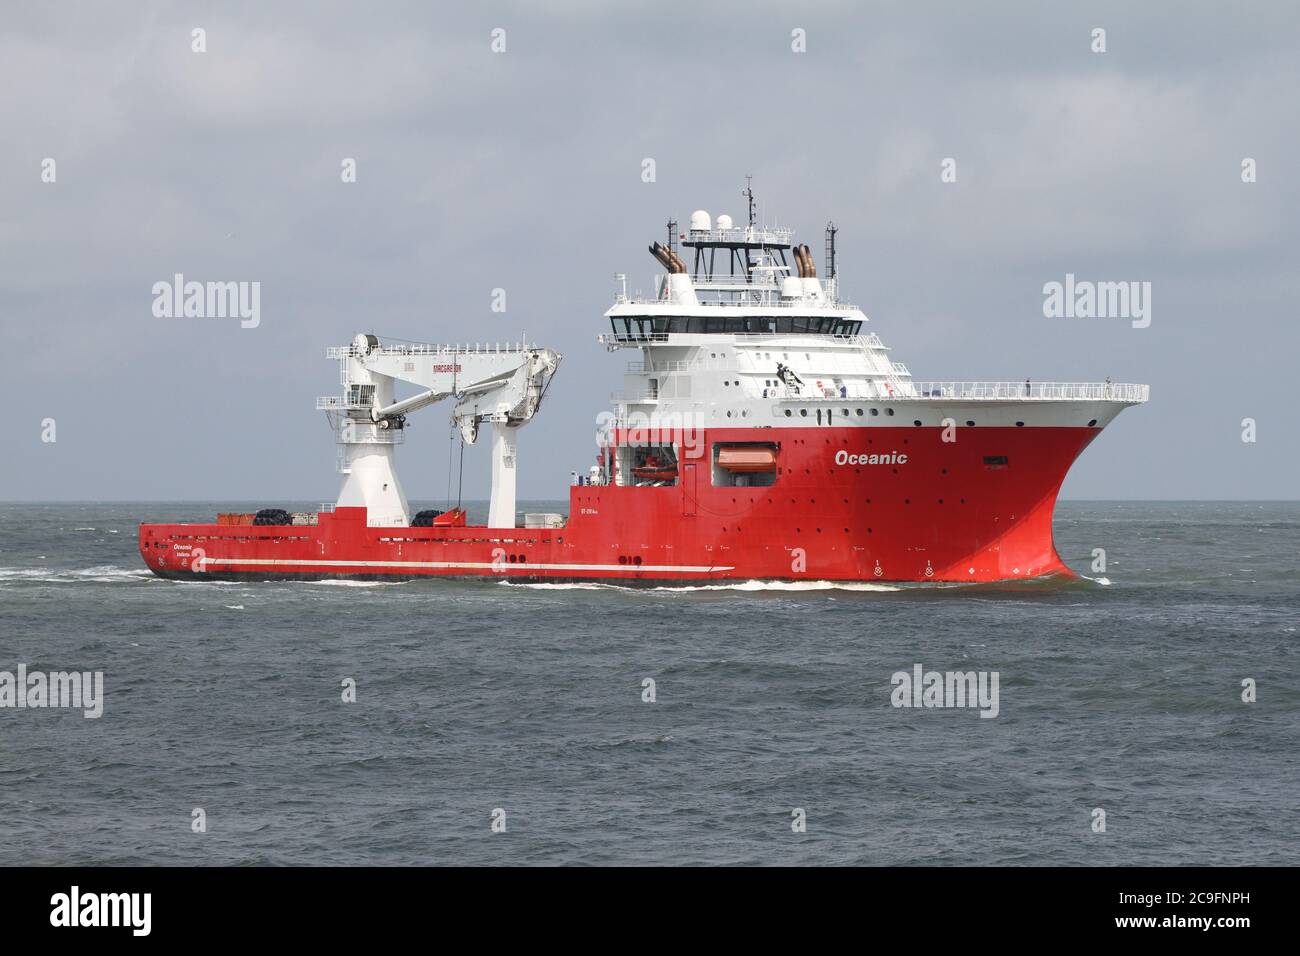 El buque de suministro marítimo Oceanic llegará al puerto de Rotterdam el 3 de julio de 2020. Foto de stock